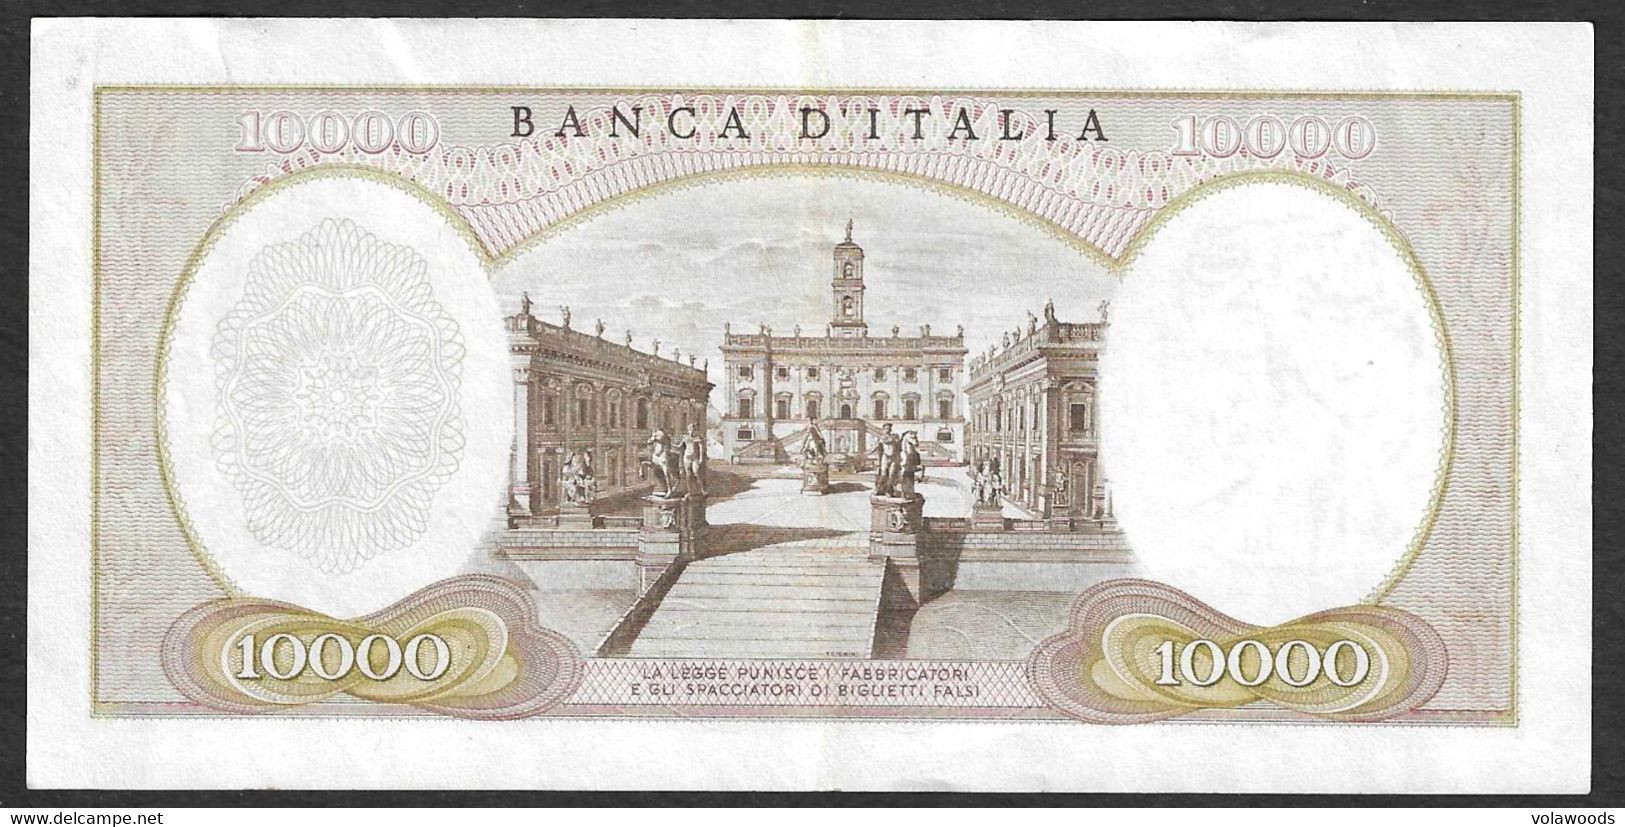 Italia - Banconota Circolata Da 10.000 Lire "Michelangelo" P-97a SOSTITUTIVE - 1962 #19 - 10.000 Lire